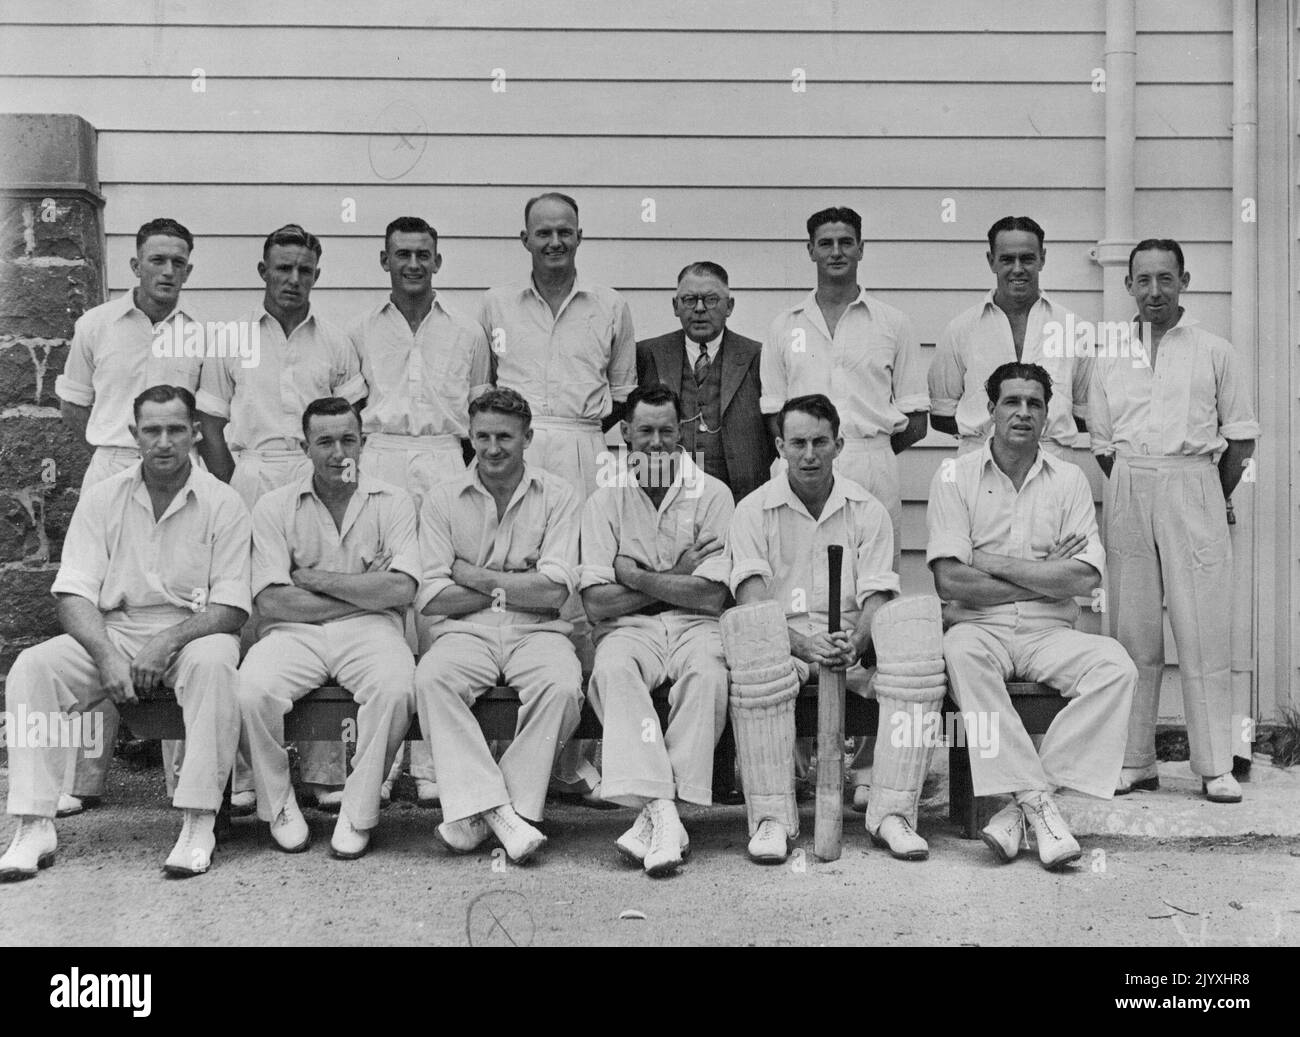 Australische Cricketspieler im Eden Park, Auckland. Hintere Reihe von links: Tallon, Lindwall, B. Dooland, W. J.O. Reilly, E.C. Geomans (Manager), K. Miller, I. Johnson, Al. Hassett. Erste Reihe: S. Barnes, R. Hamence, C. McCool, W.A. Brown, K. Menleman, E.Toshack. SID Barner links von ihm von. 02. April 1946. (Foto von der N.Z. Herald). Stockfoto